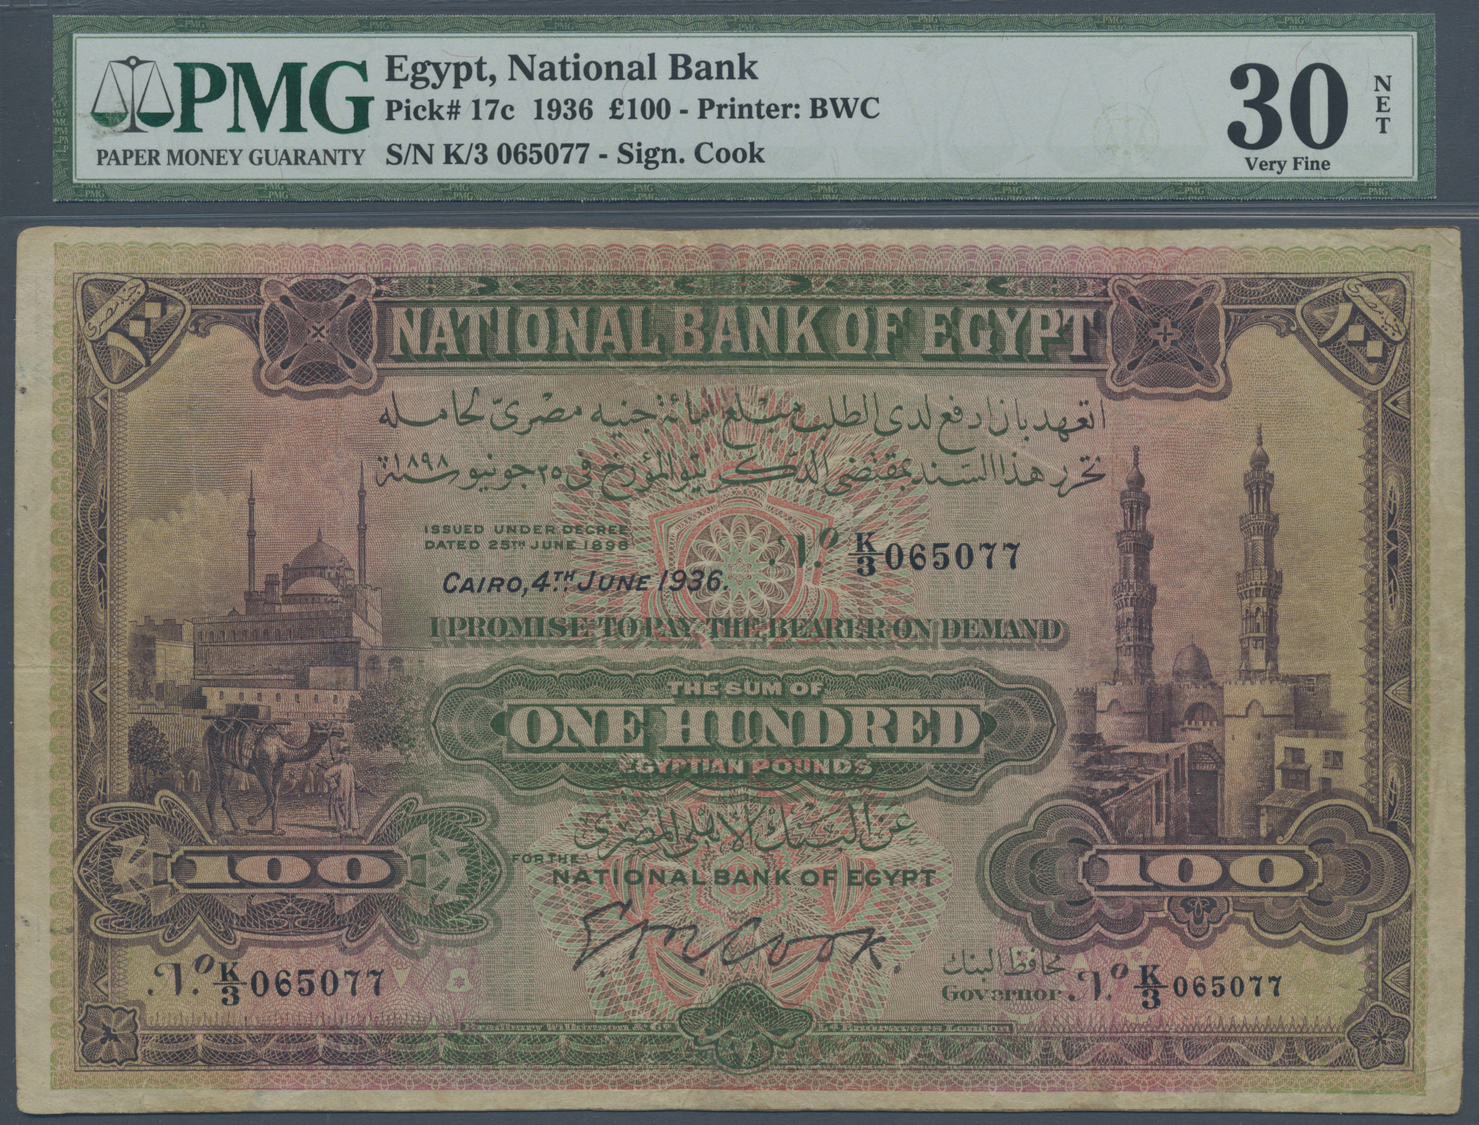 00689 Egypt / Ägypten: 100 Pounds 1936 Sign. Cook P. 17c, PMG Graded 30 Very Fine NET. - Egypt